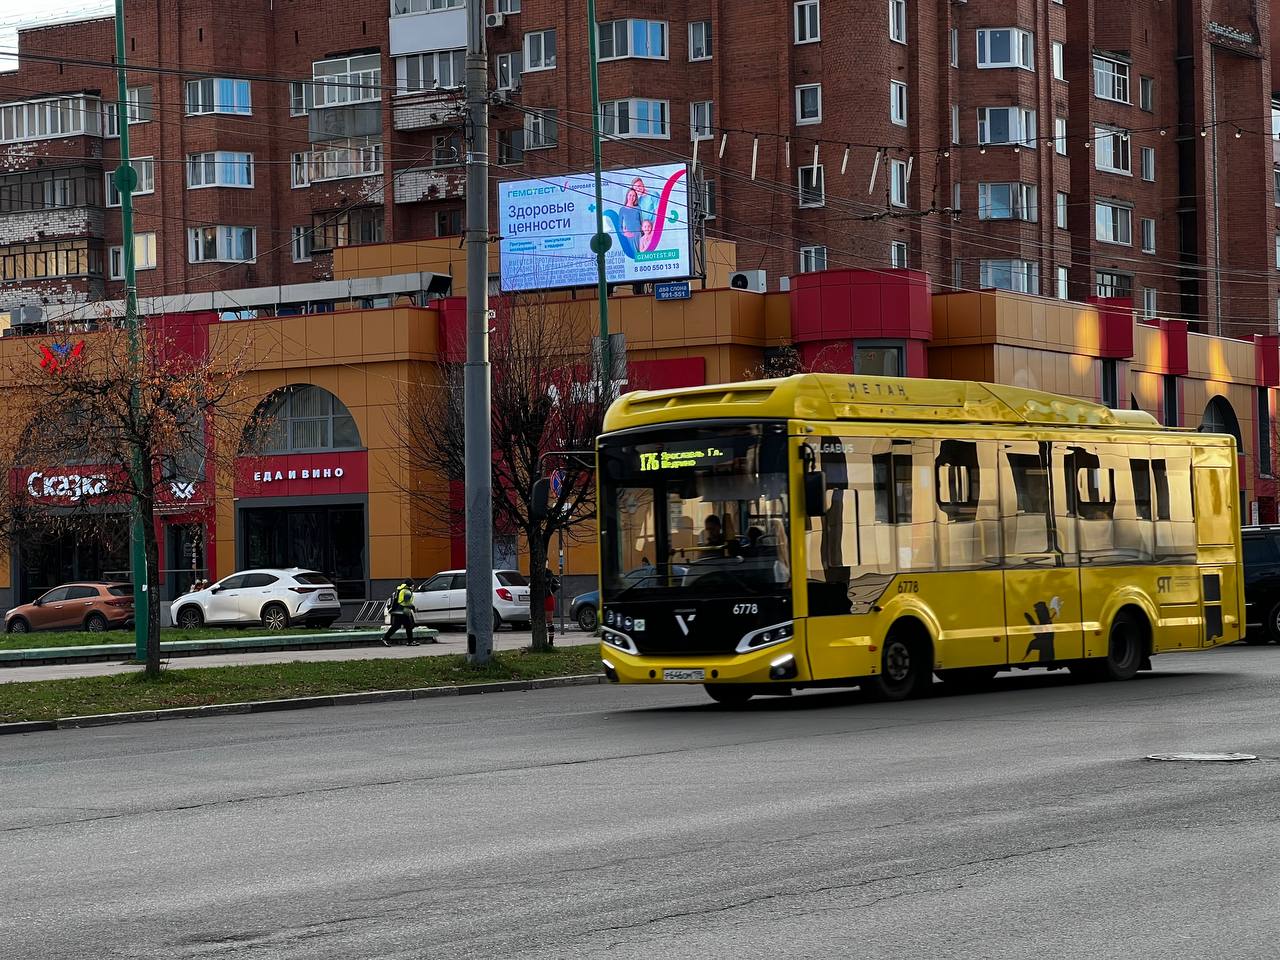 Автобусы в Ярославле полностью заменят на новые в следующем году — Евраев